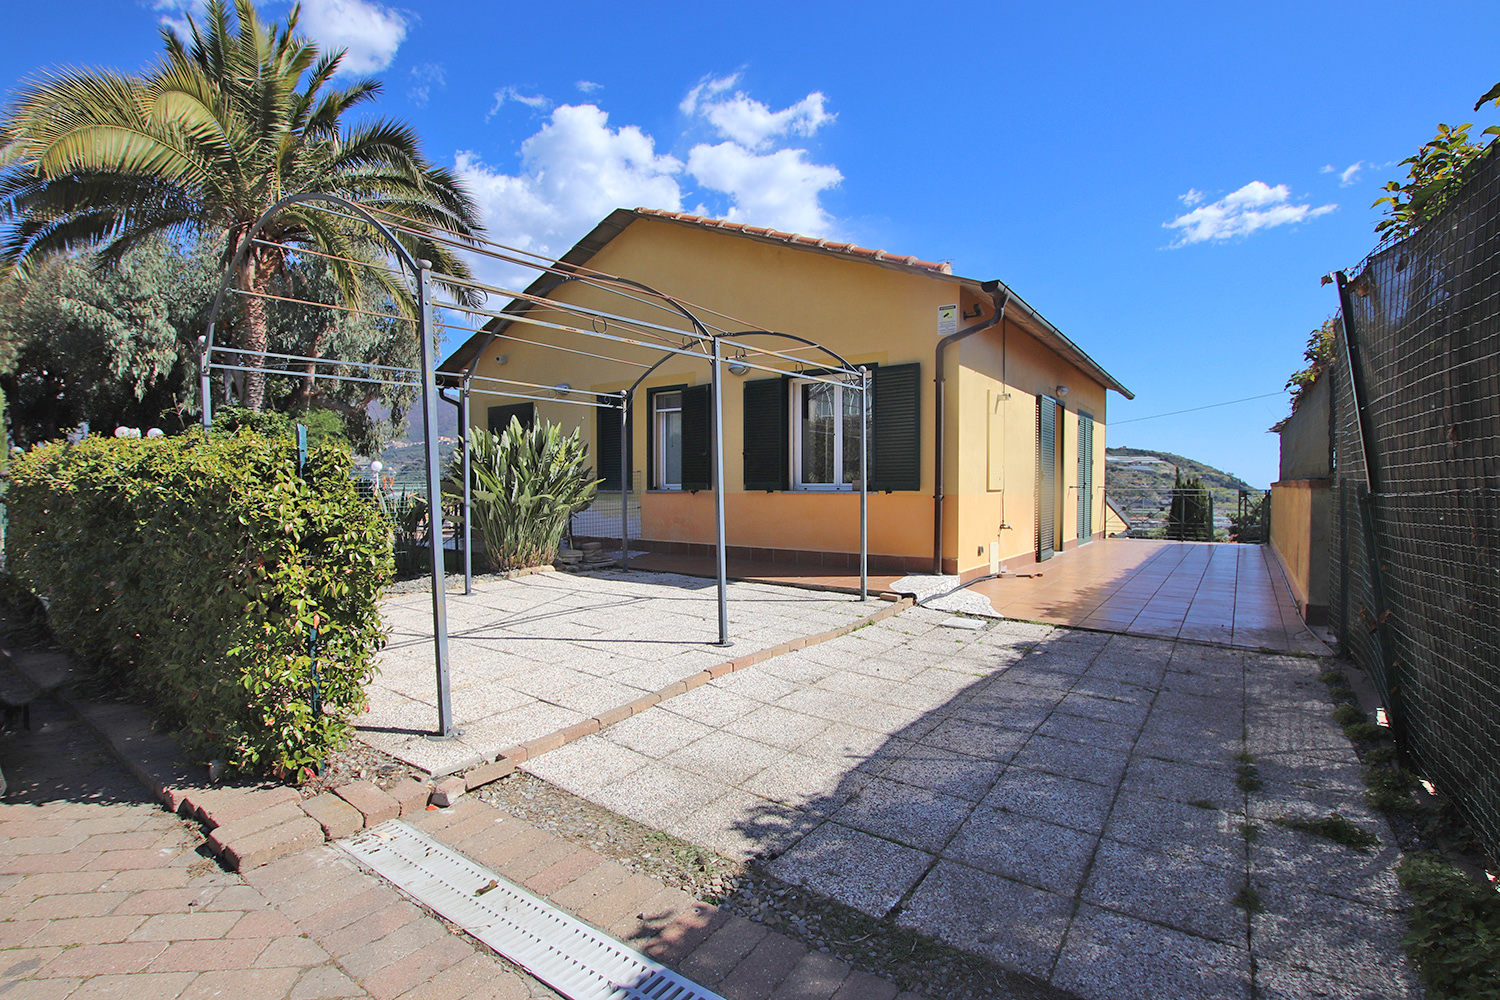 Semi-detached house in Arma di Taggia